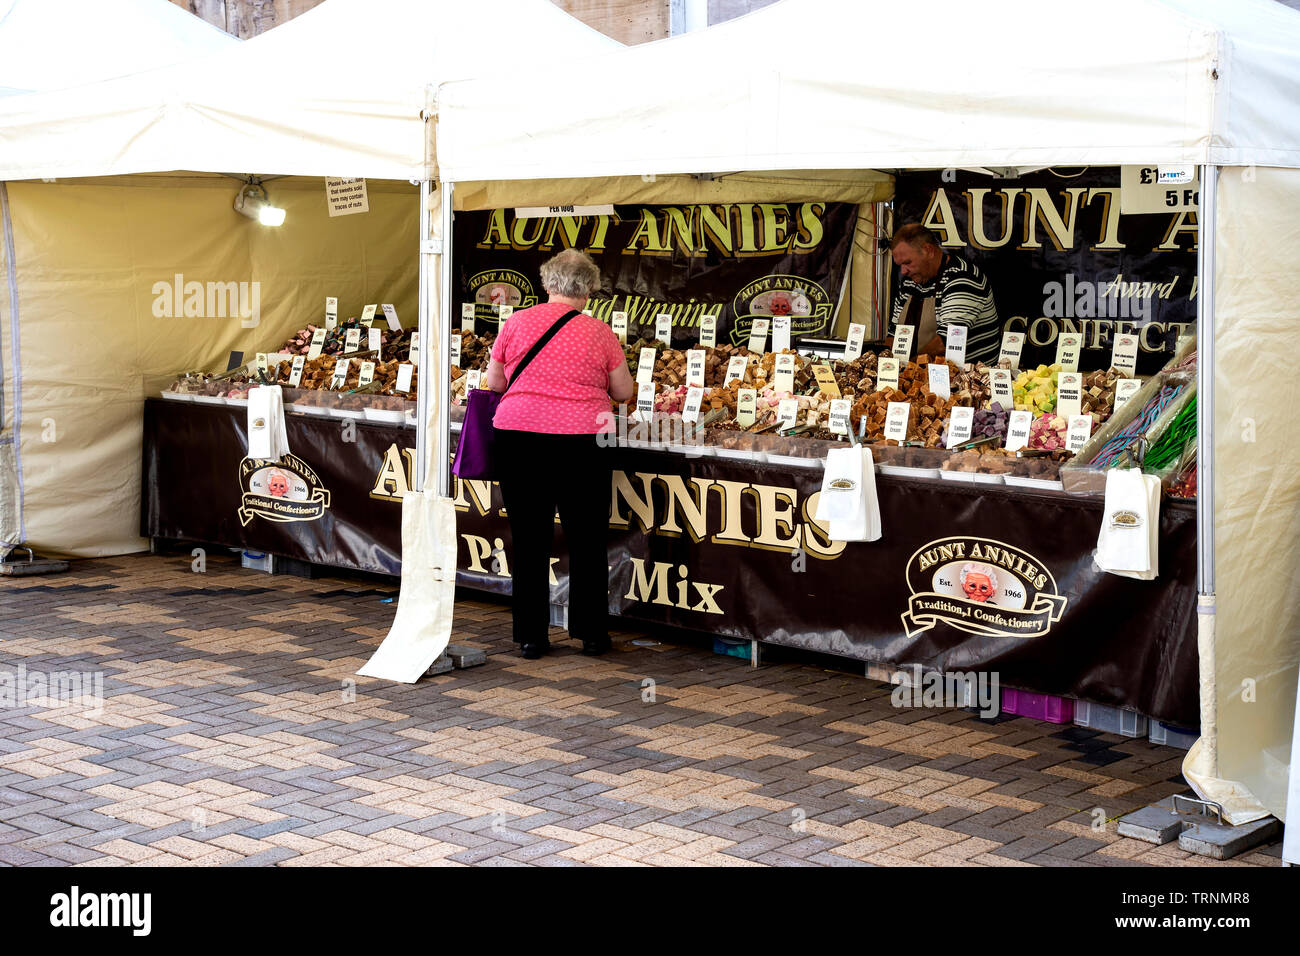 La visite d'un client Dame Street market stall confiserie primé où choisir et mélanger les sélections sont disponibles, dans le West Yorkshire Banque D'Images